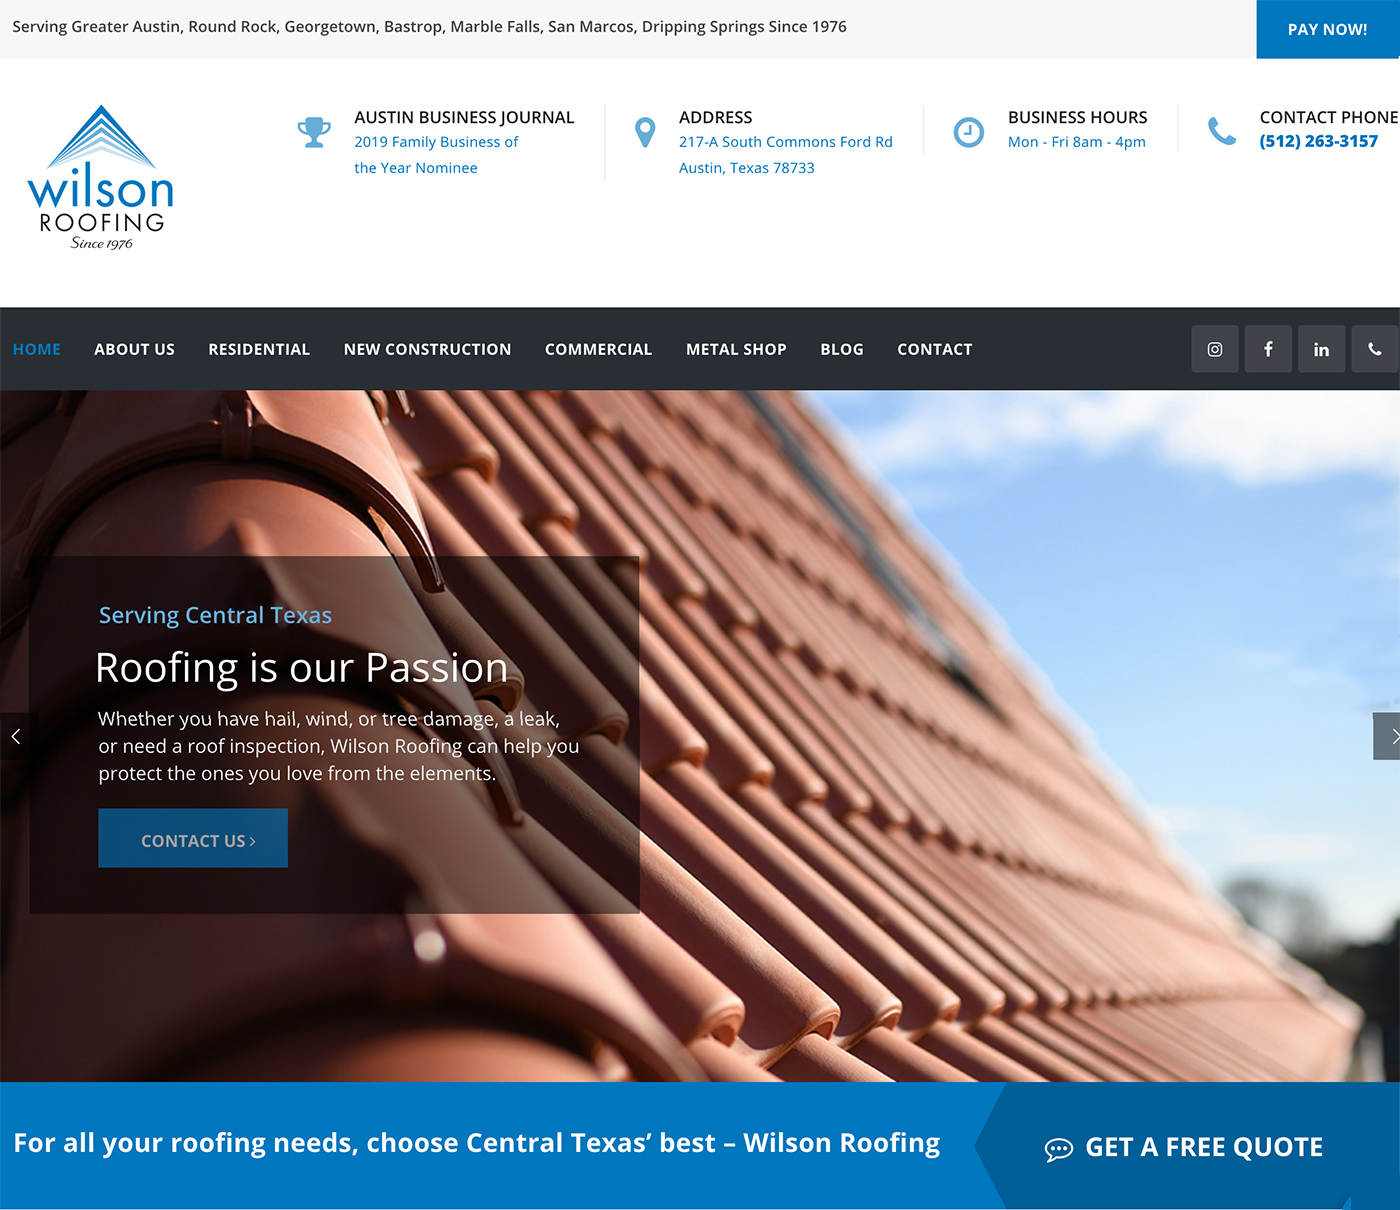 wilson roofing website image